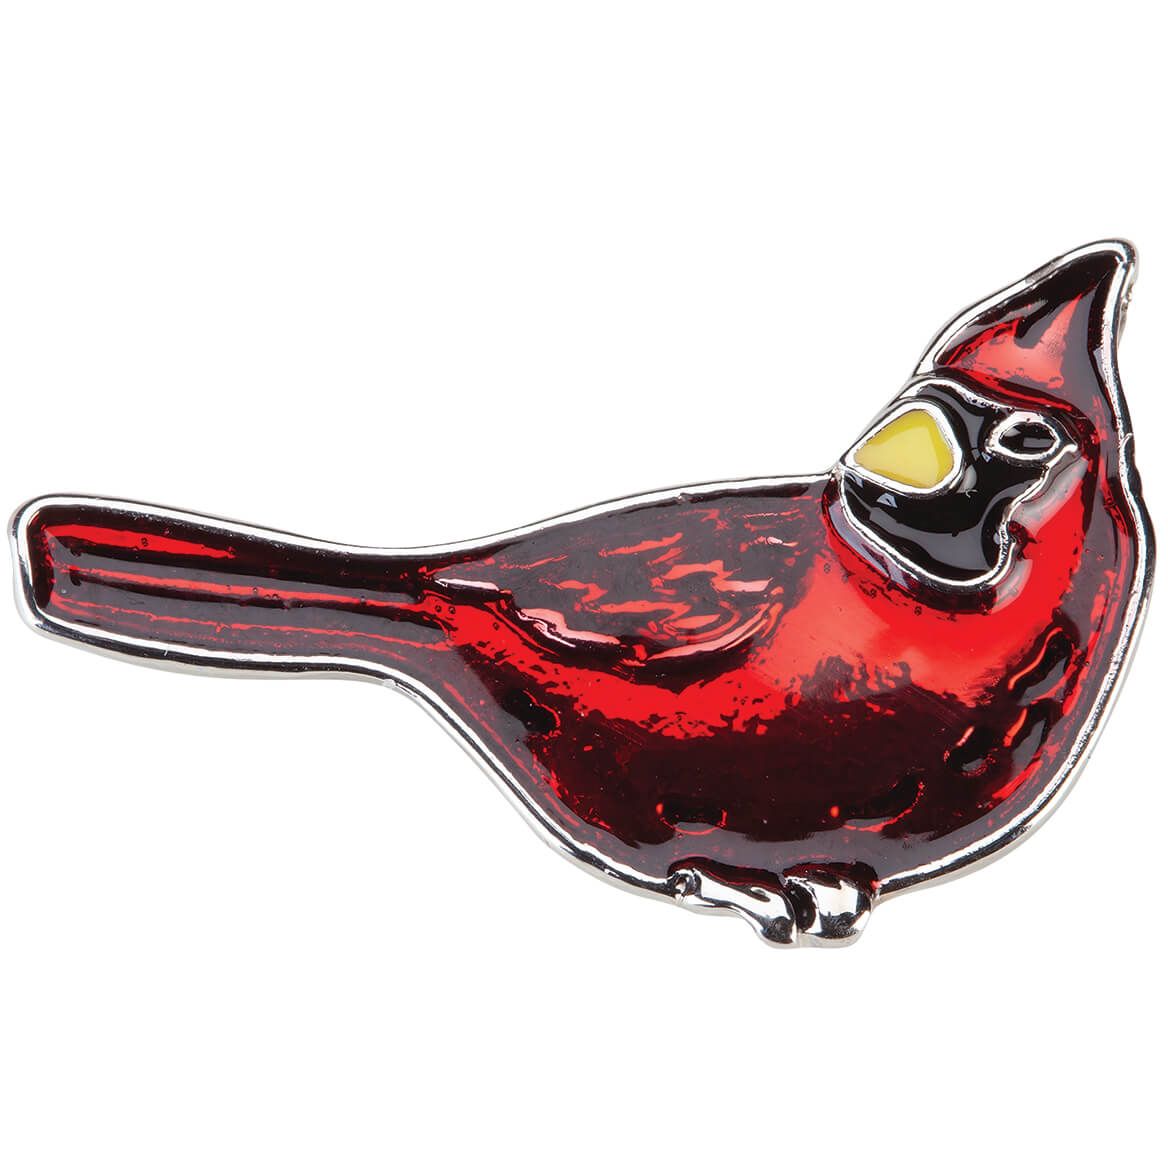 Cardinal Pin + '-' + 374098